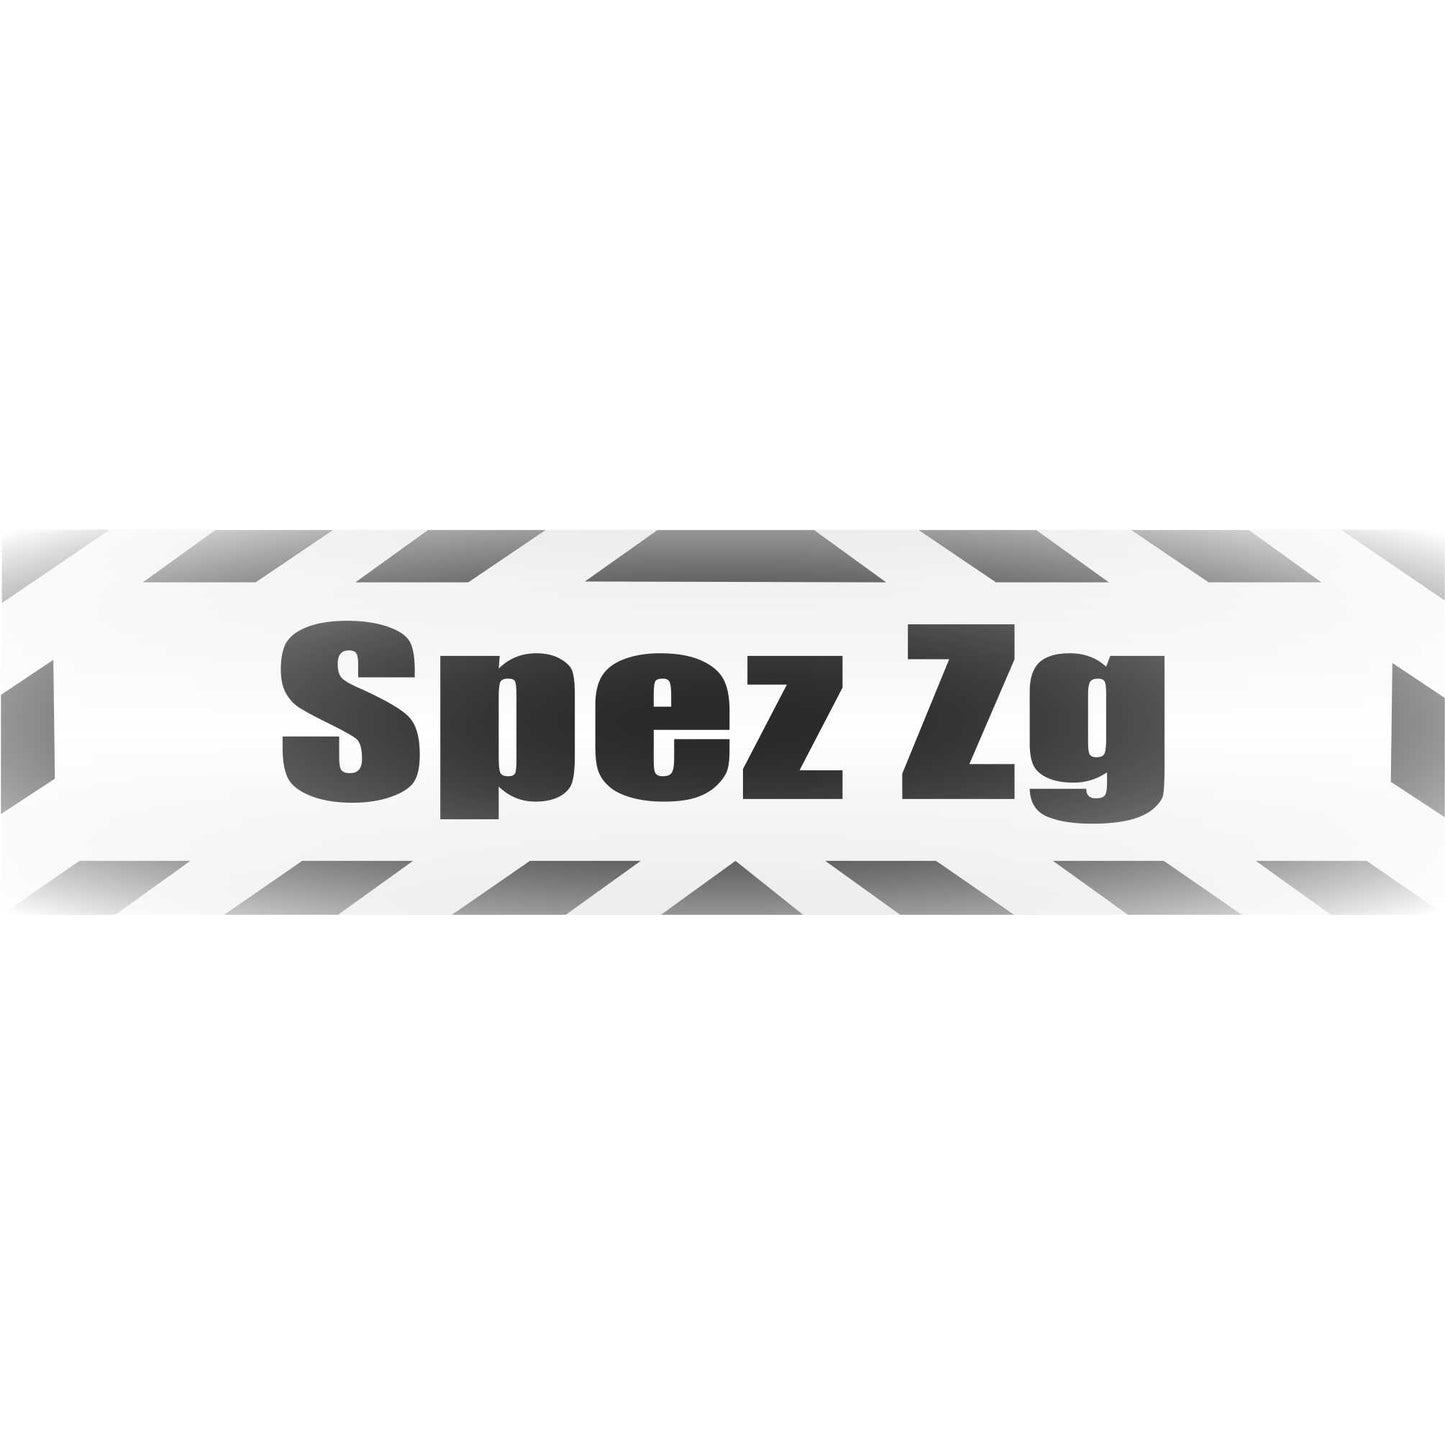 Magnetschild - Spez zg Spezialzug - Magnetfolie für Auto - LKW - Truck - Baustelle - Firma